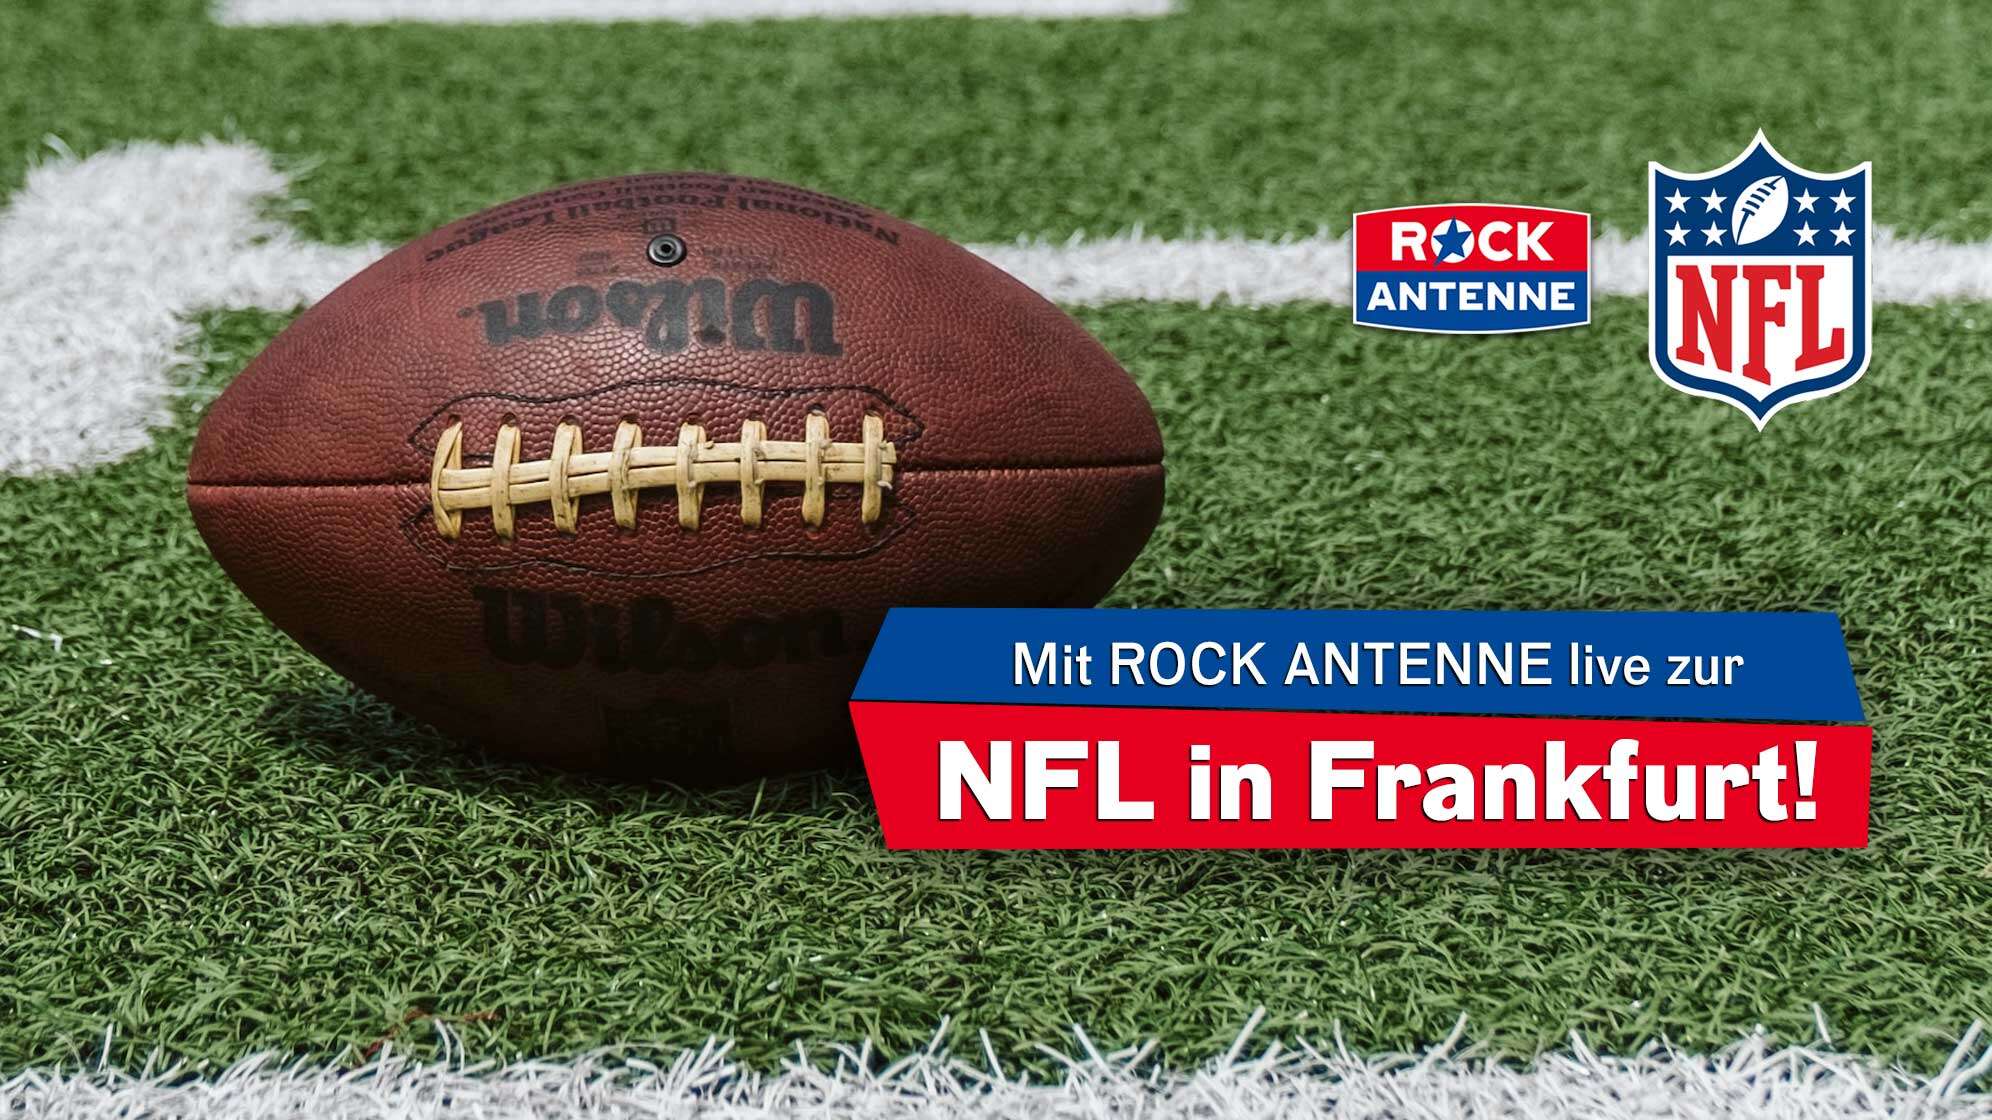 Bild eines Footballs auf dem Rasen, Text "mit ROCK ANTENNE live zur NFL in Frankfurt" und die Logos von ROCK ANTENNE und der NFL